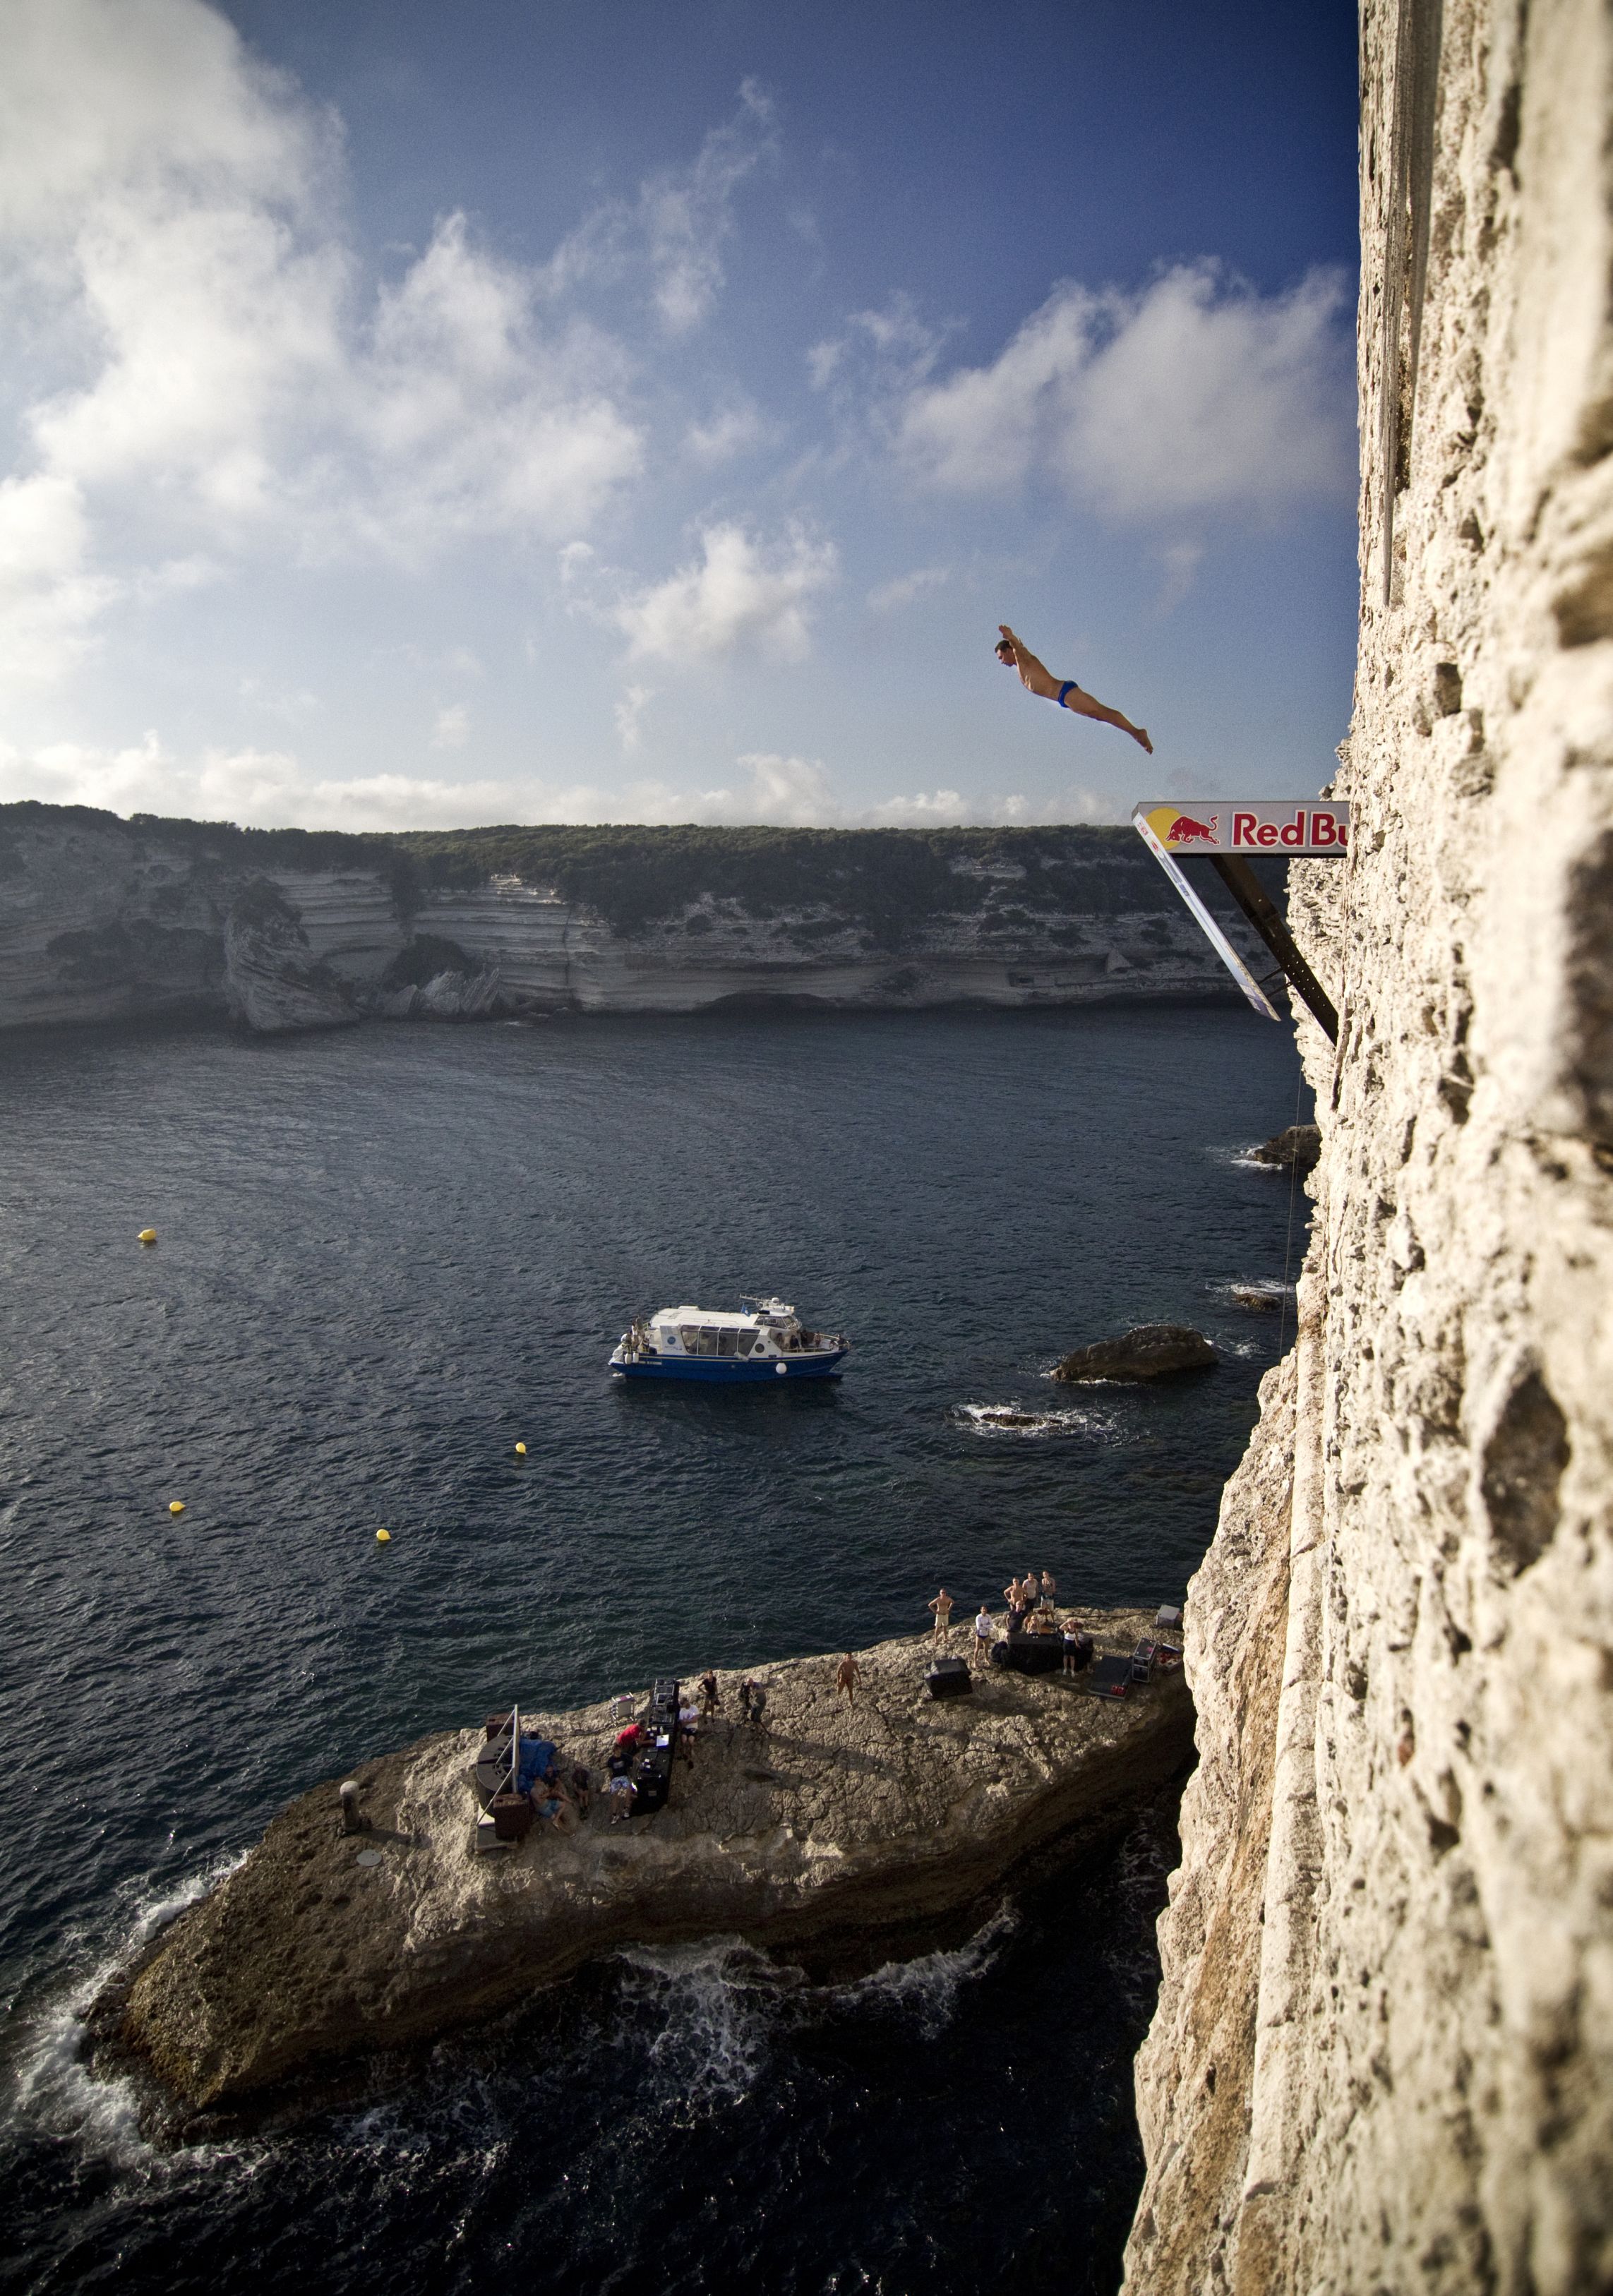 Red Bull Cliff Diving: Europa wita po raz pierwszy w tym roku